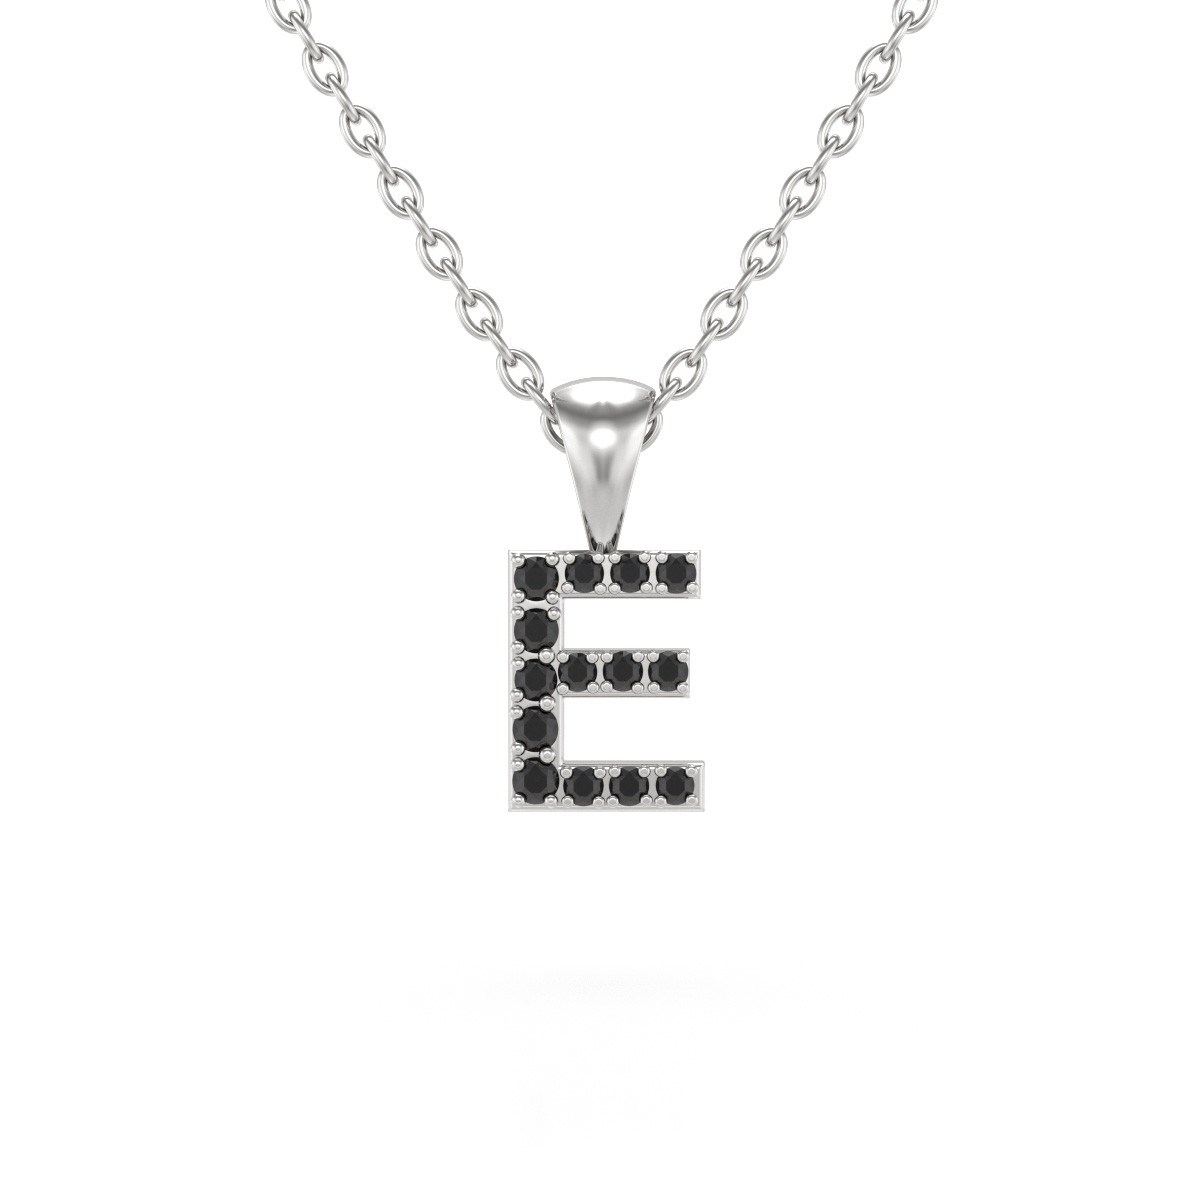 Collier Pendentif ADEN Lettre E Diamant Noir Chaine Argent 925 incluse 0.72grs